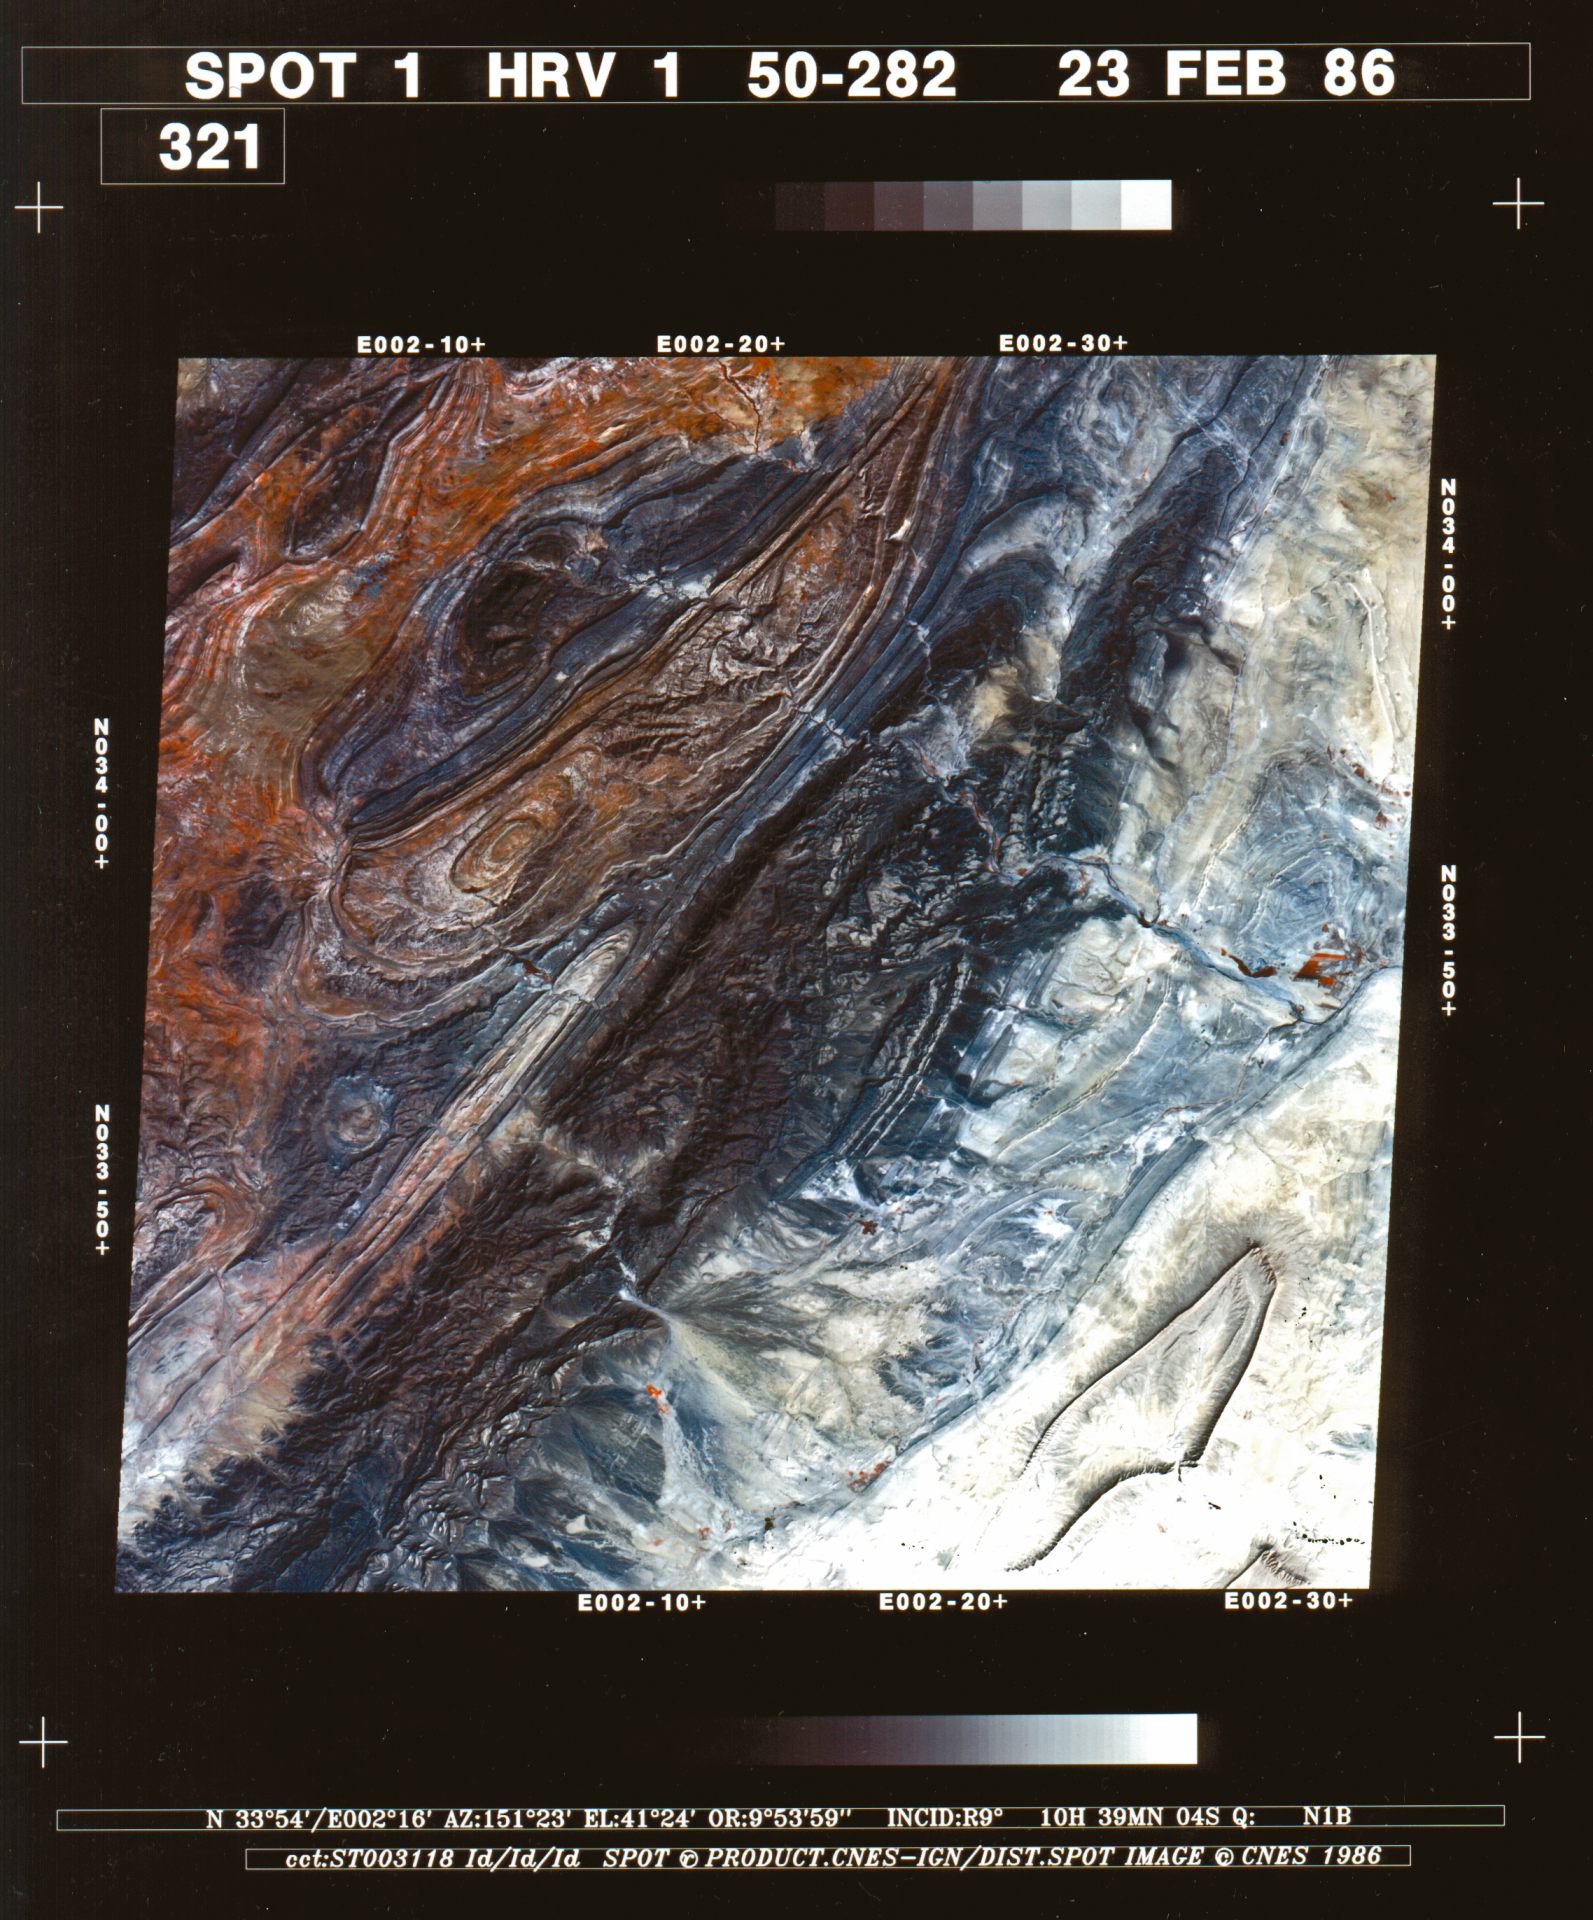 30 ans SPOT - Anniversaire - Première image - Multispectrale - Djebel Amour au nord du Sahara algérien. Une des premières images du satellite SPOT 1. Image multispectrale - Sahara algérience - Acquise le 23 février 1986 à 10h39 UTC. Copyright CNES 1986. Distribution Airbus DS